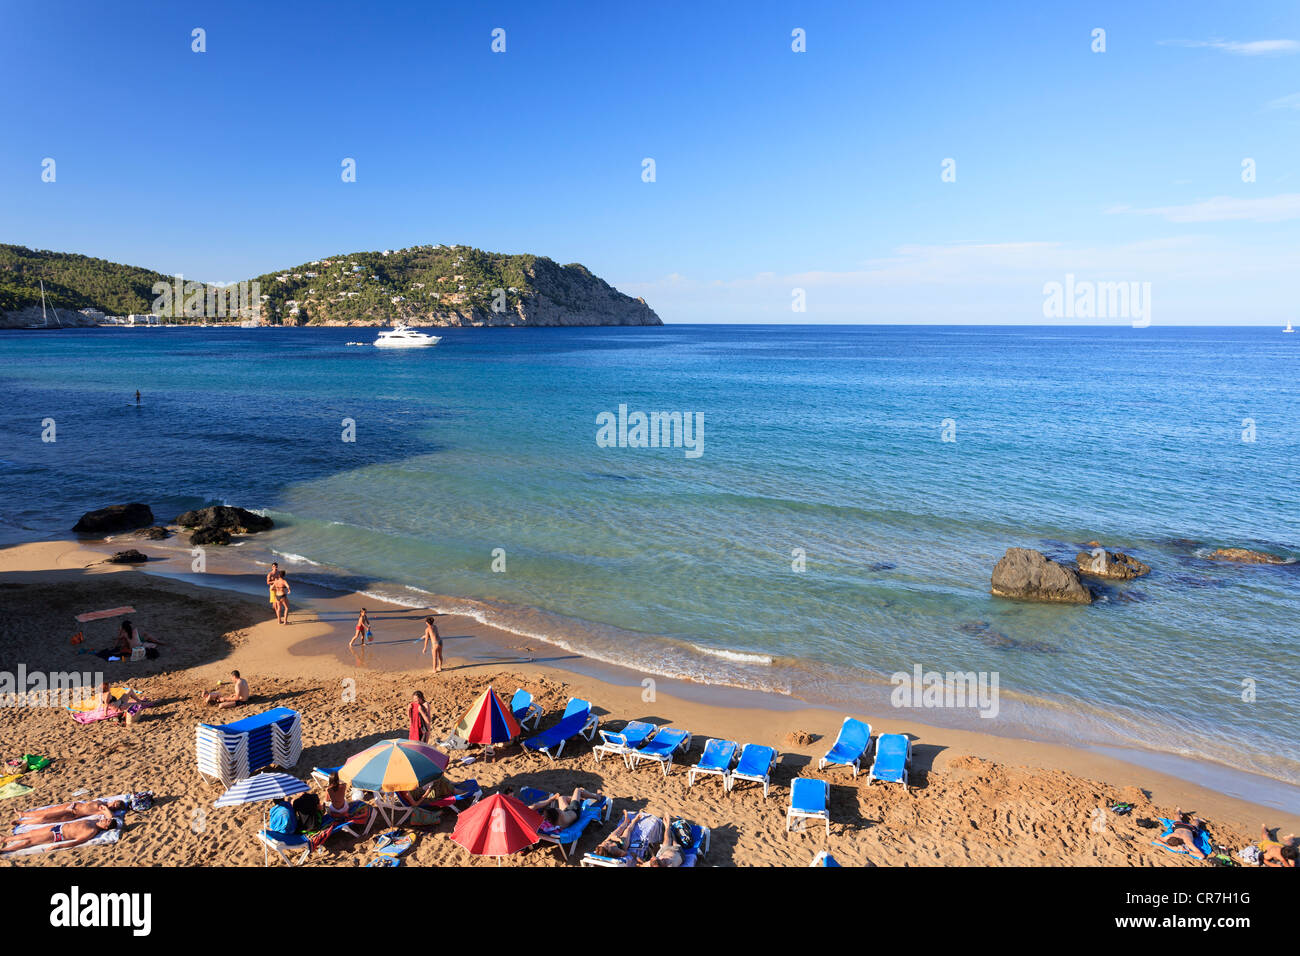 Spain, Balearic Islands, Ibiza, Aigues Blanques beach Stock Photo